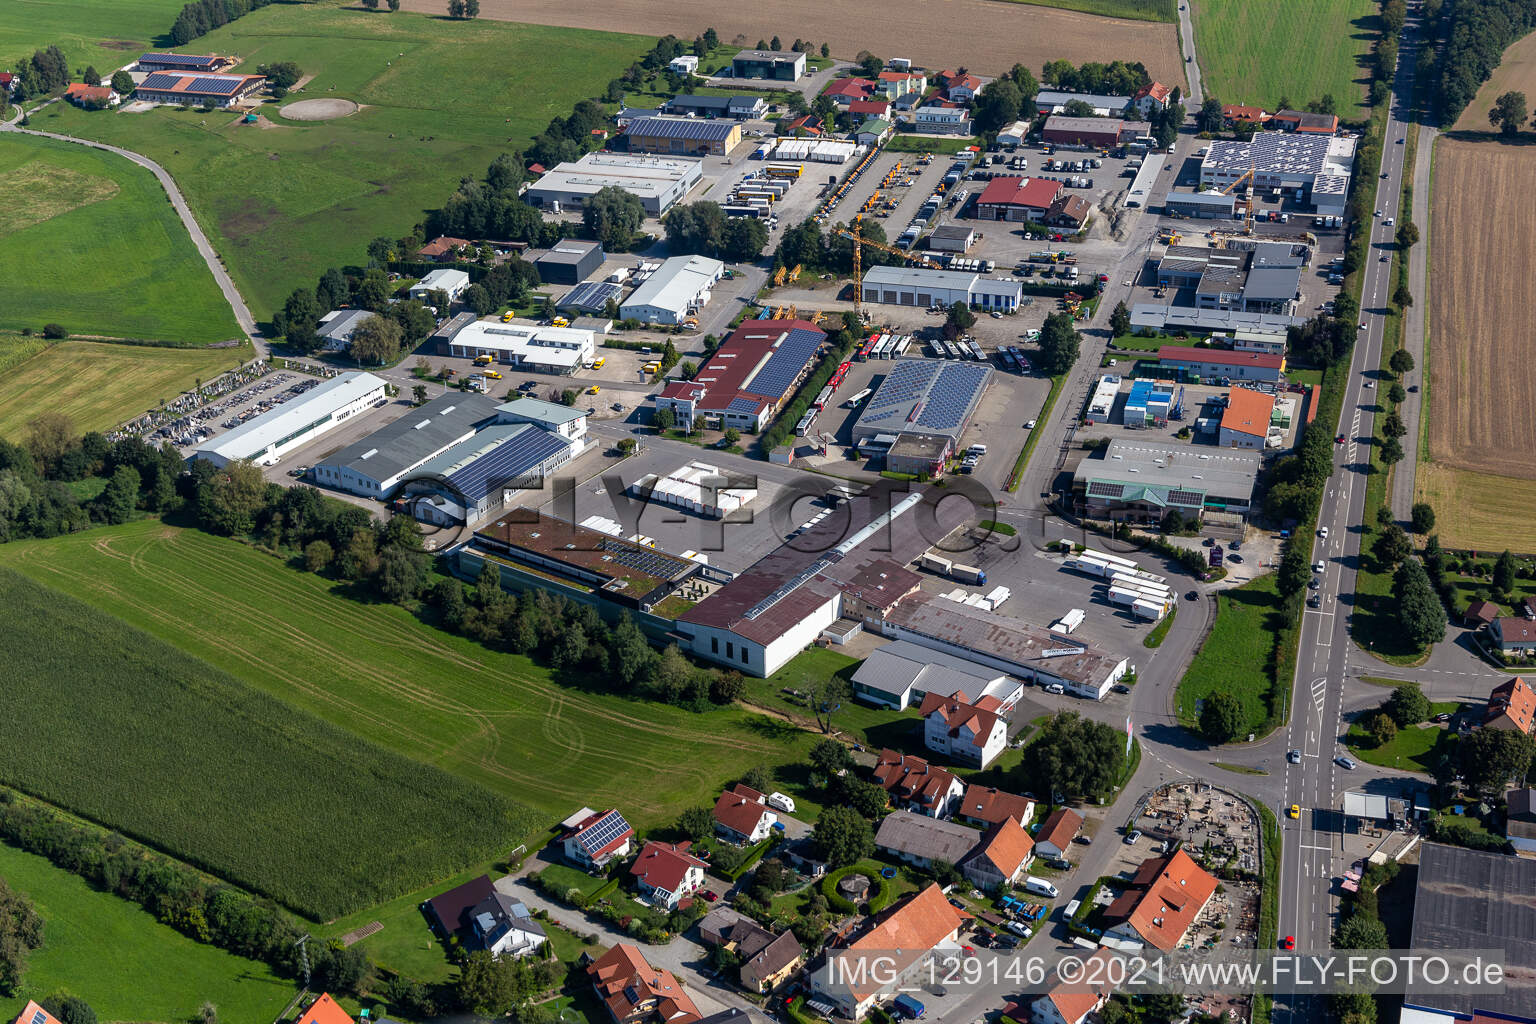 Vue aérienne de Zone industrielle du Riedweg à le quartier Gaisbeuren in Bad Waldsee dans le département Bade-Wurtemberg, Allemagne